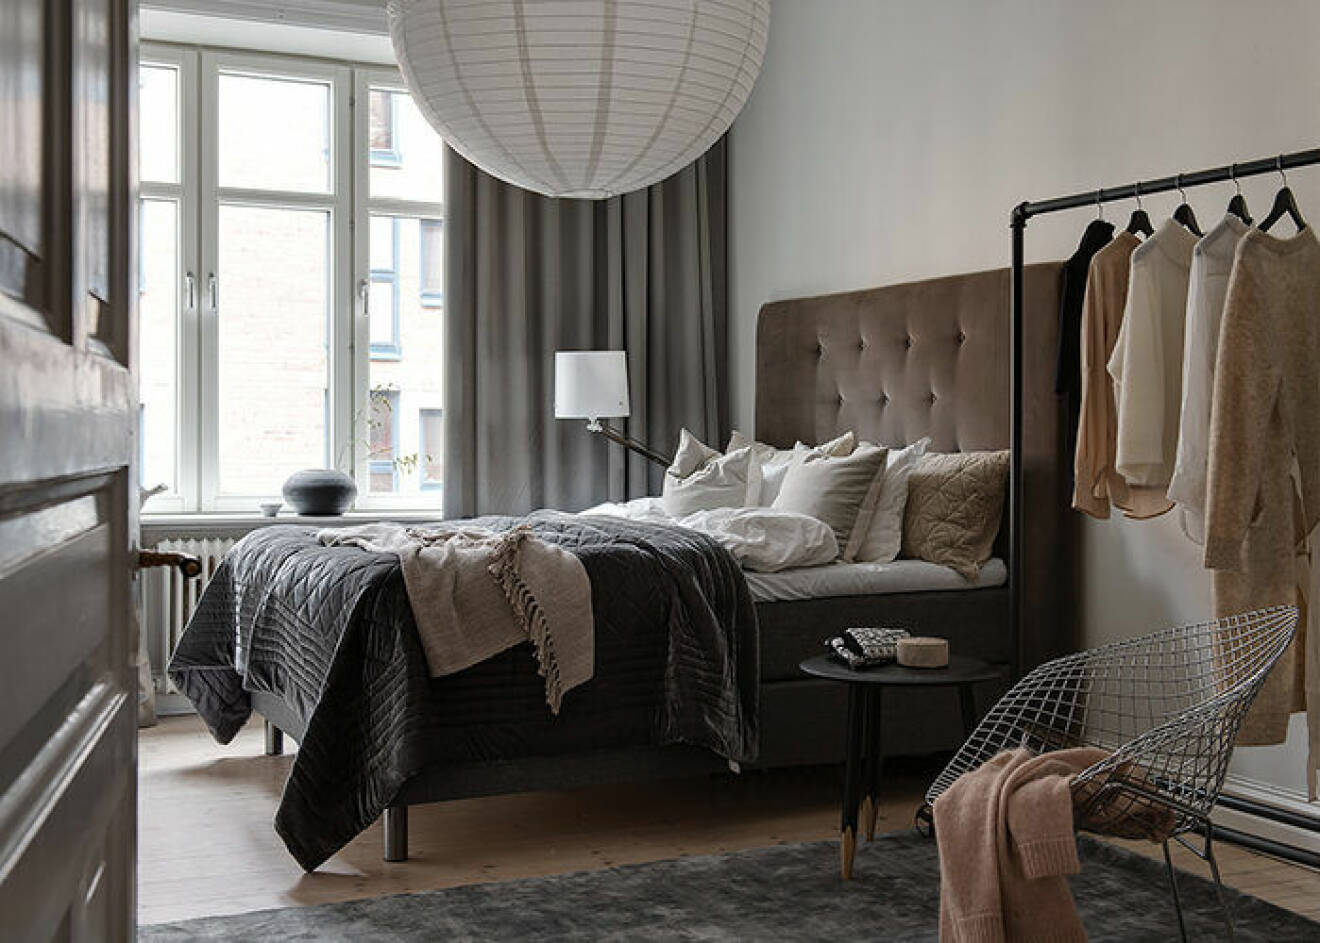 Lyxigt sovrum i hotellstil med textilier i lager på lager